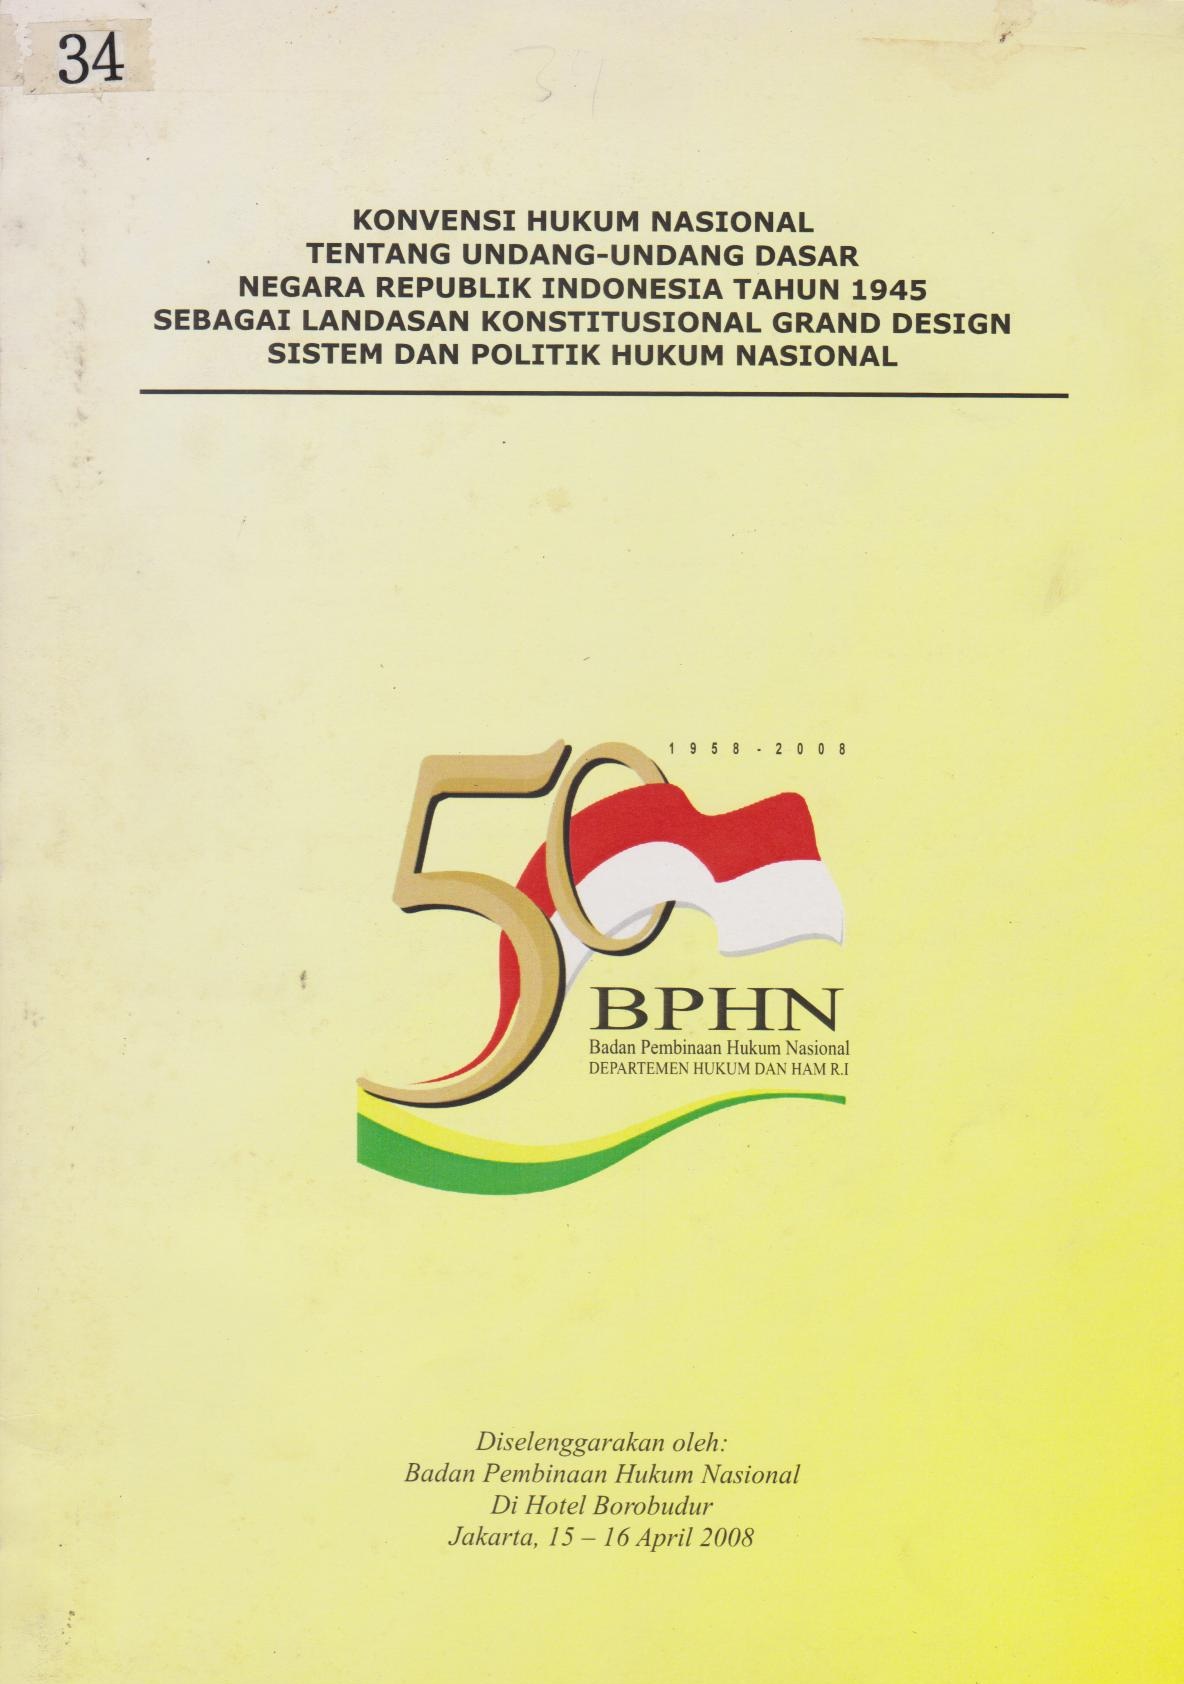 Konvensi Hukum Nasional Tentang Undang - Undang Dasar Negara Republik Indonesia Tahun 1945 Sebagai Landasan Konstitusional Grand Design Sistem Dan Politik Hukum Nasional